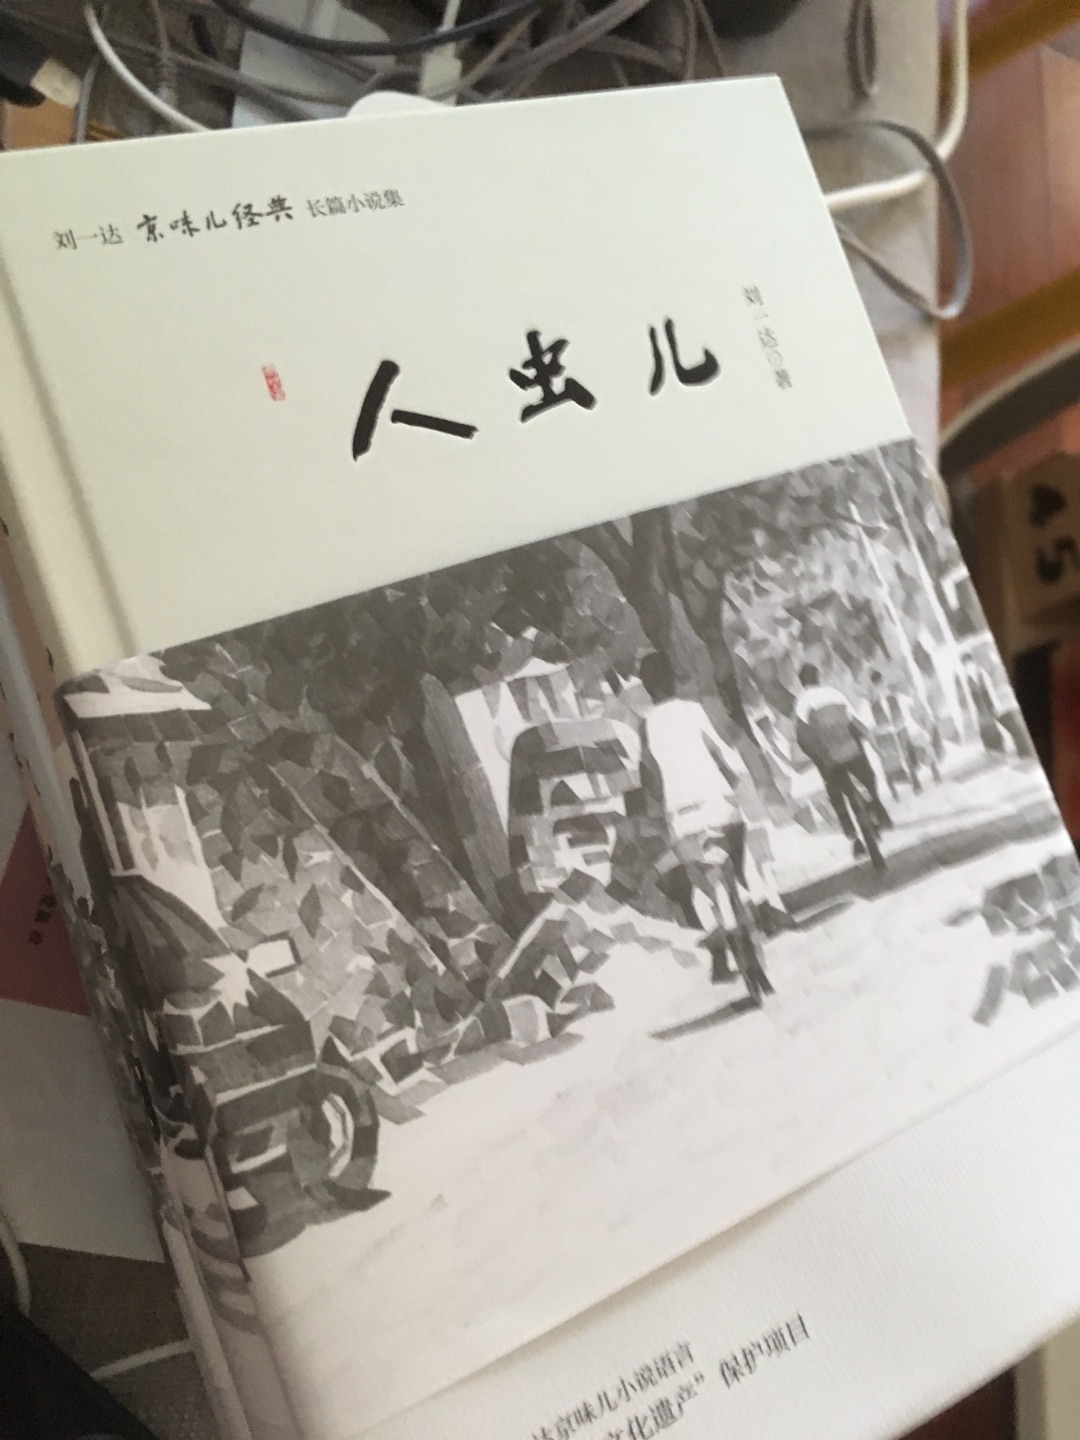 真正有意思的京味文化，刘一达先生的作品实在是太有趣啦，值得一读！